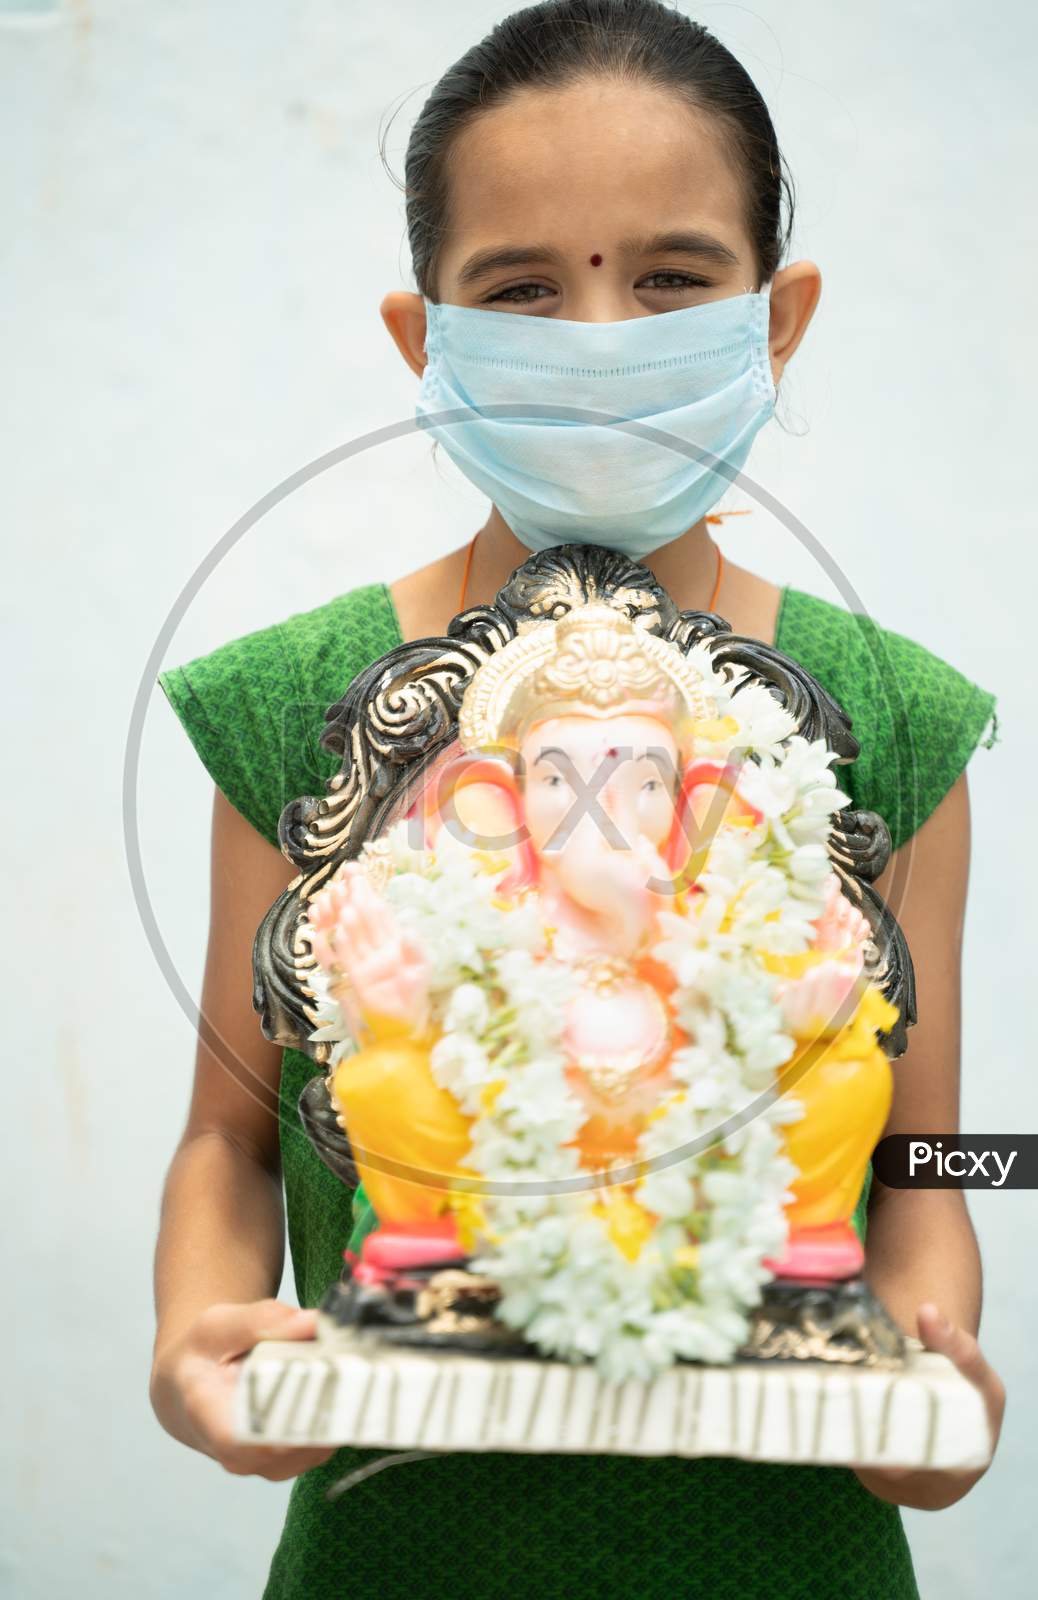 Girl Kid With Medical Mask Holding Ganesha Idol On Isolated Background - Concept Of Vinayaka Chaturthi Festival Celebrations During Coronavirus Or Covid-19 Pandemic